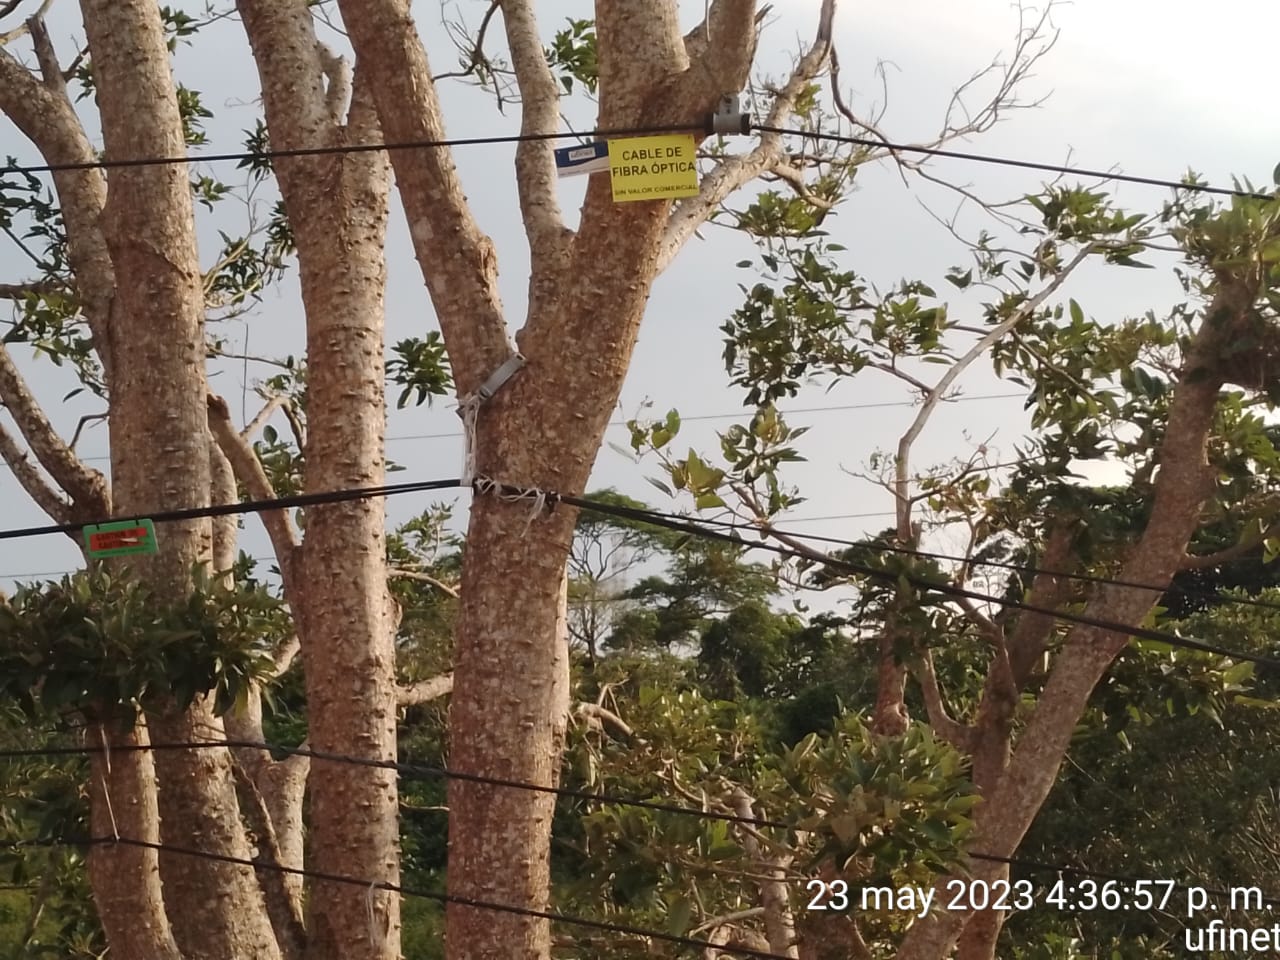 Cables en árboles: atrasos en ruta Barranca-Limonal pueden provocar cortes de Internet, advierte cámara